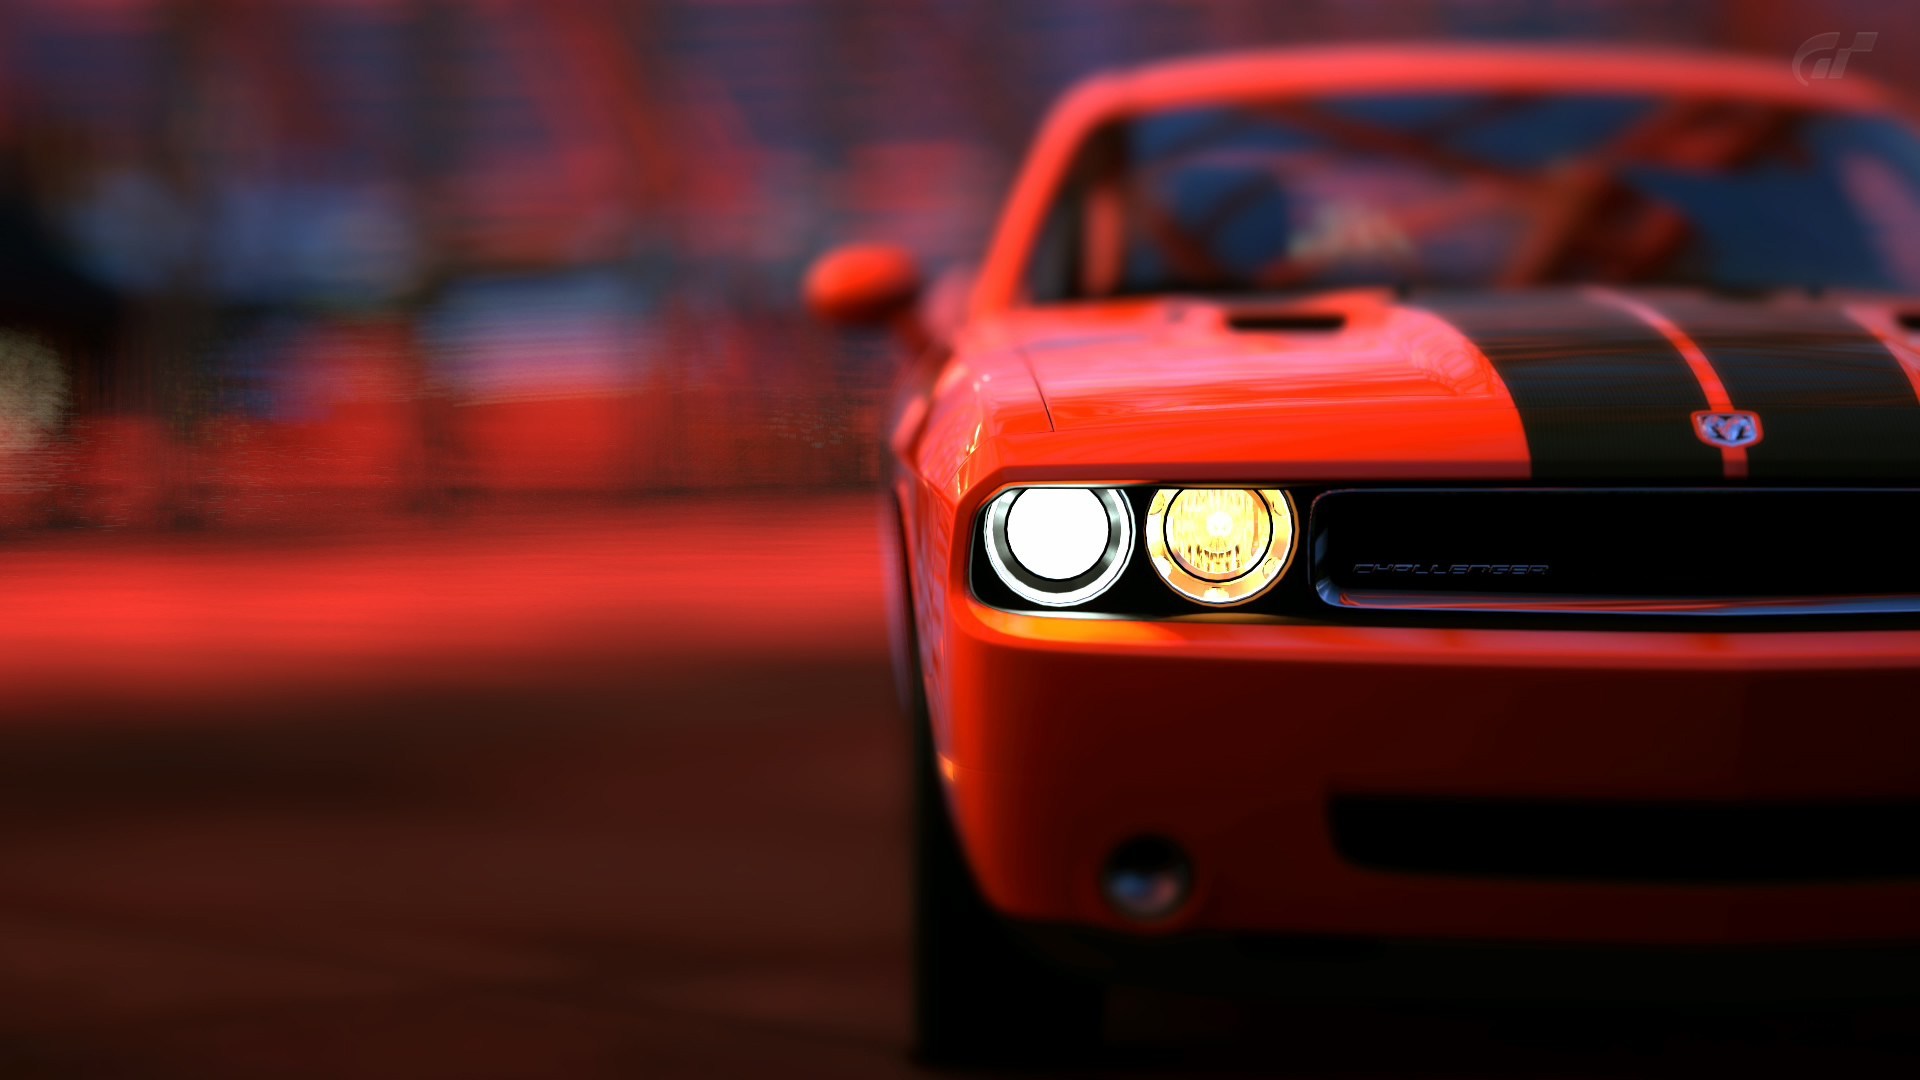 Dodge Challenger srt8 Red